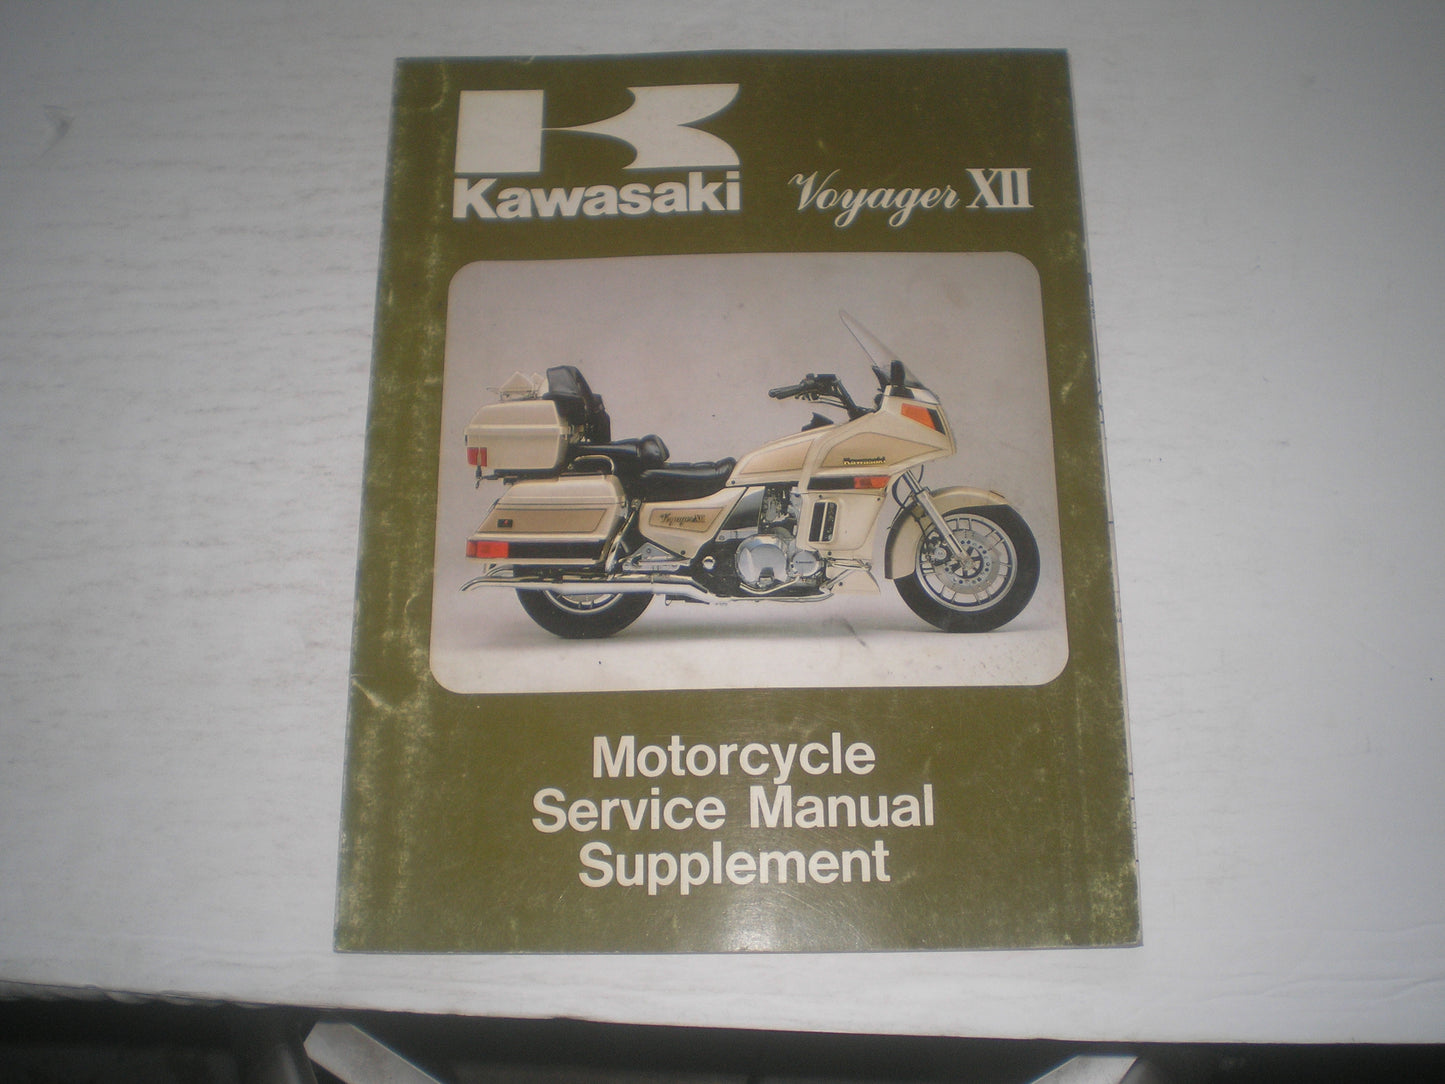 KAWASAKI Voyager XII  ZG1200 B1  1987  Service Manual Supplement  99924-1089-51  #1998